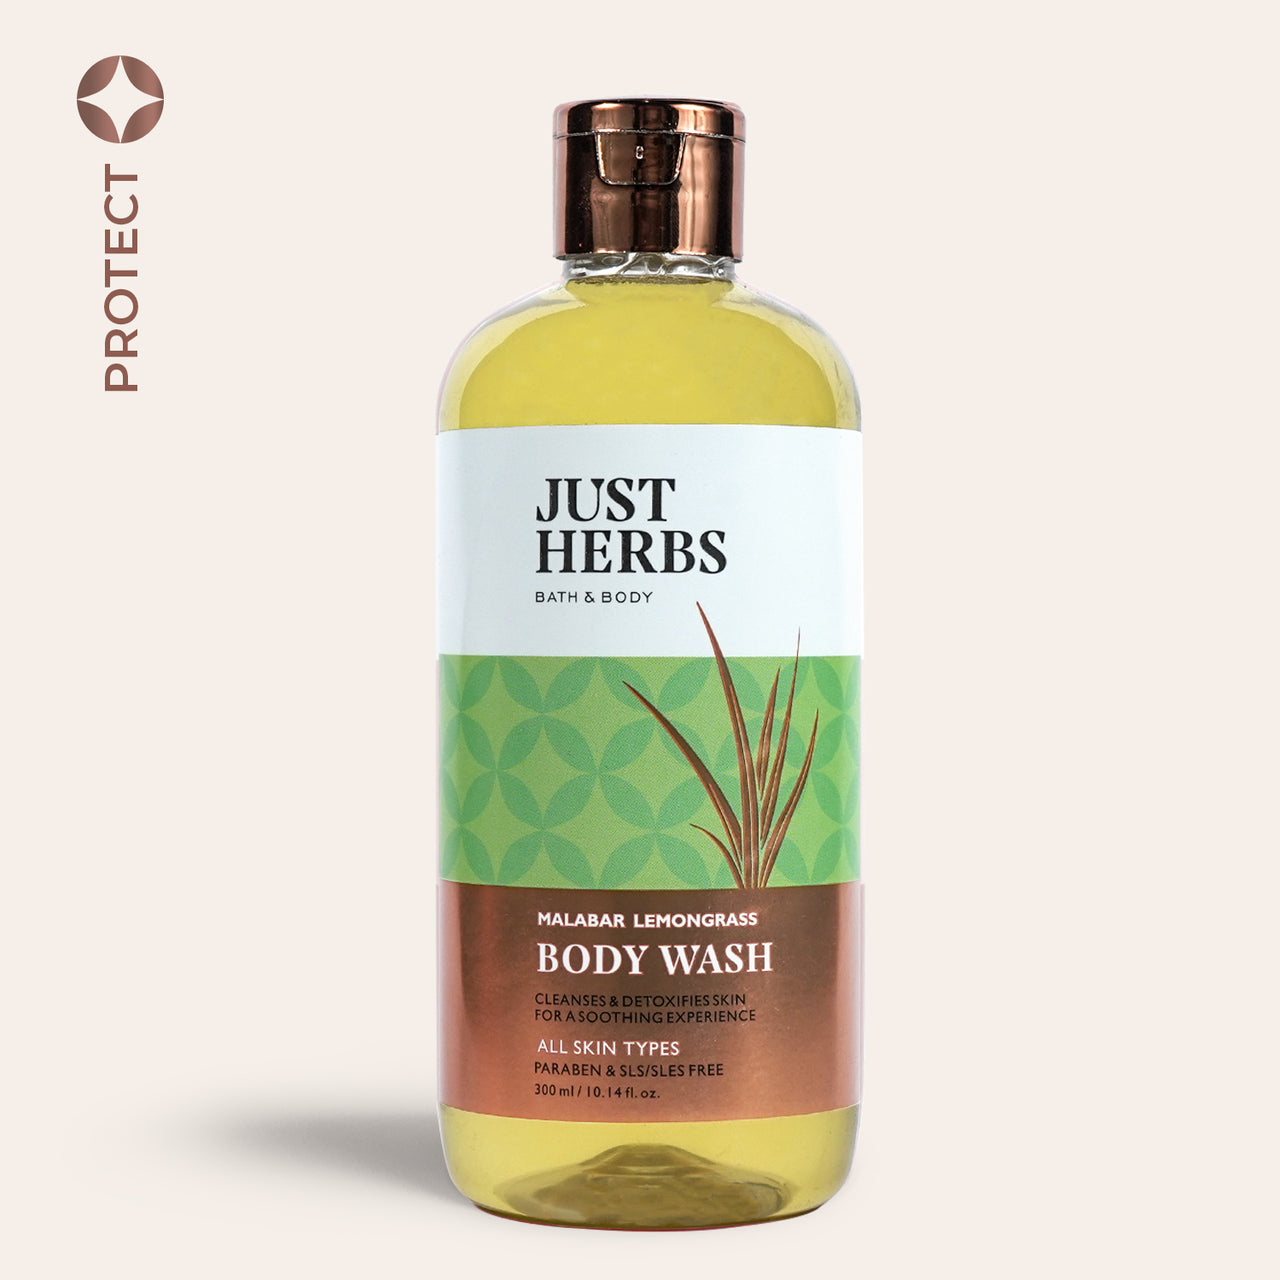 Malabar Lemongrass Body Wash